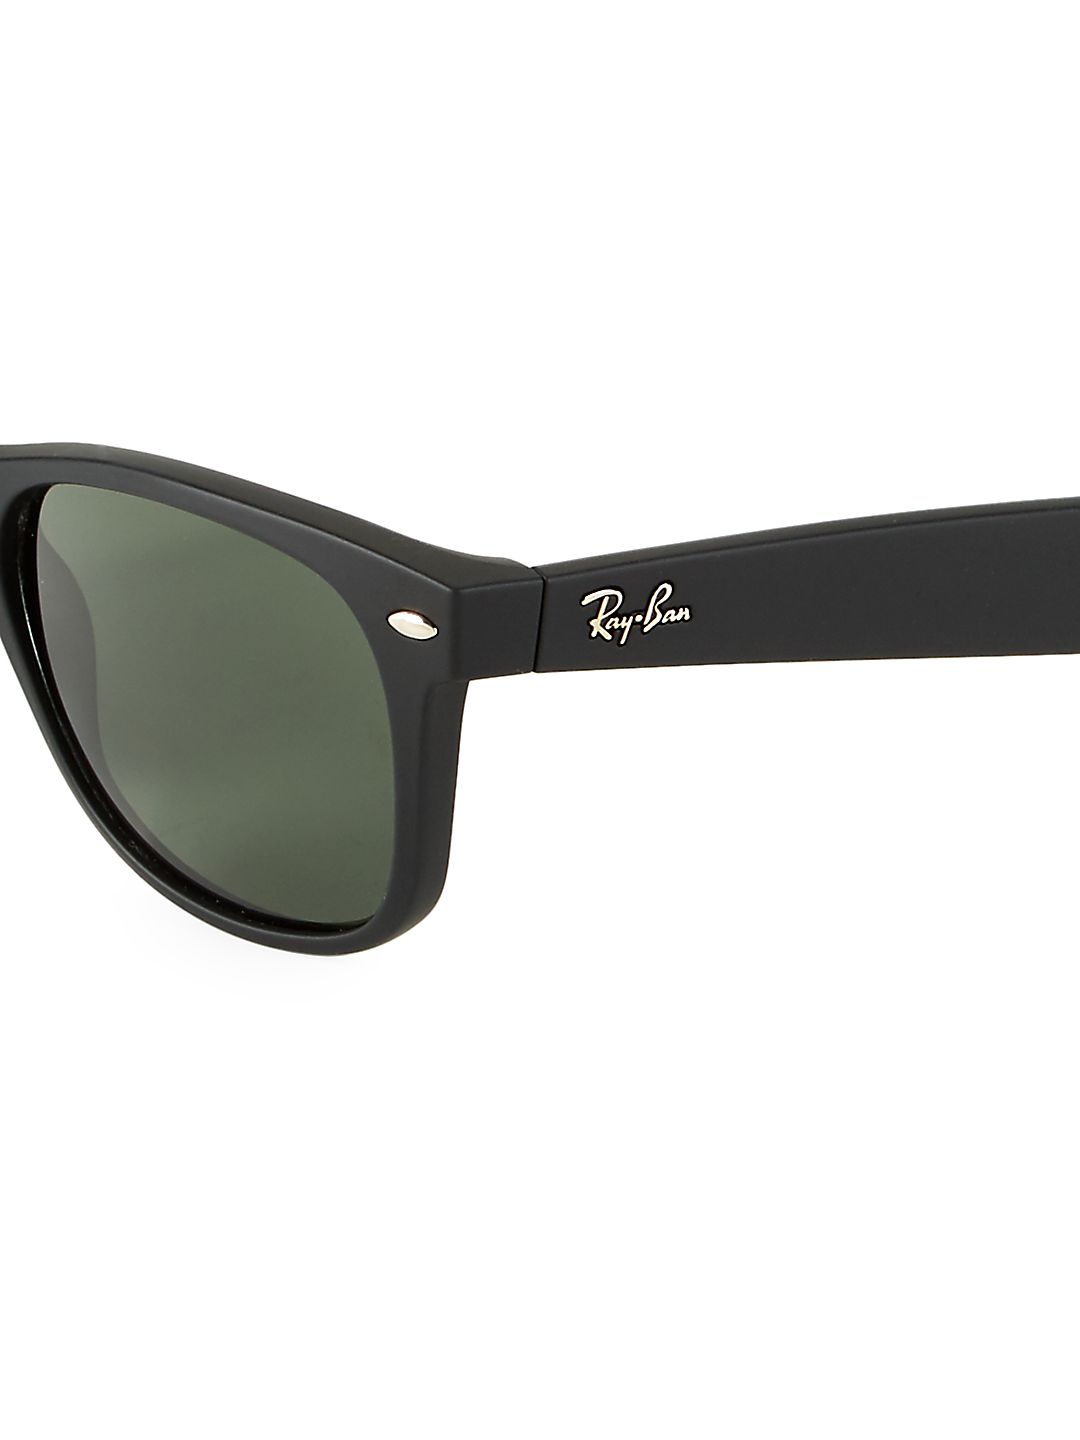 55MM RB2132 New Classic Wayfarer Sunglasses - image 3 of 3